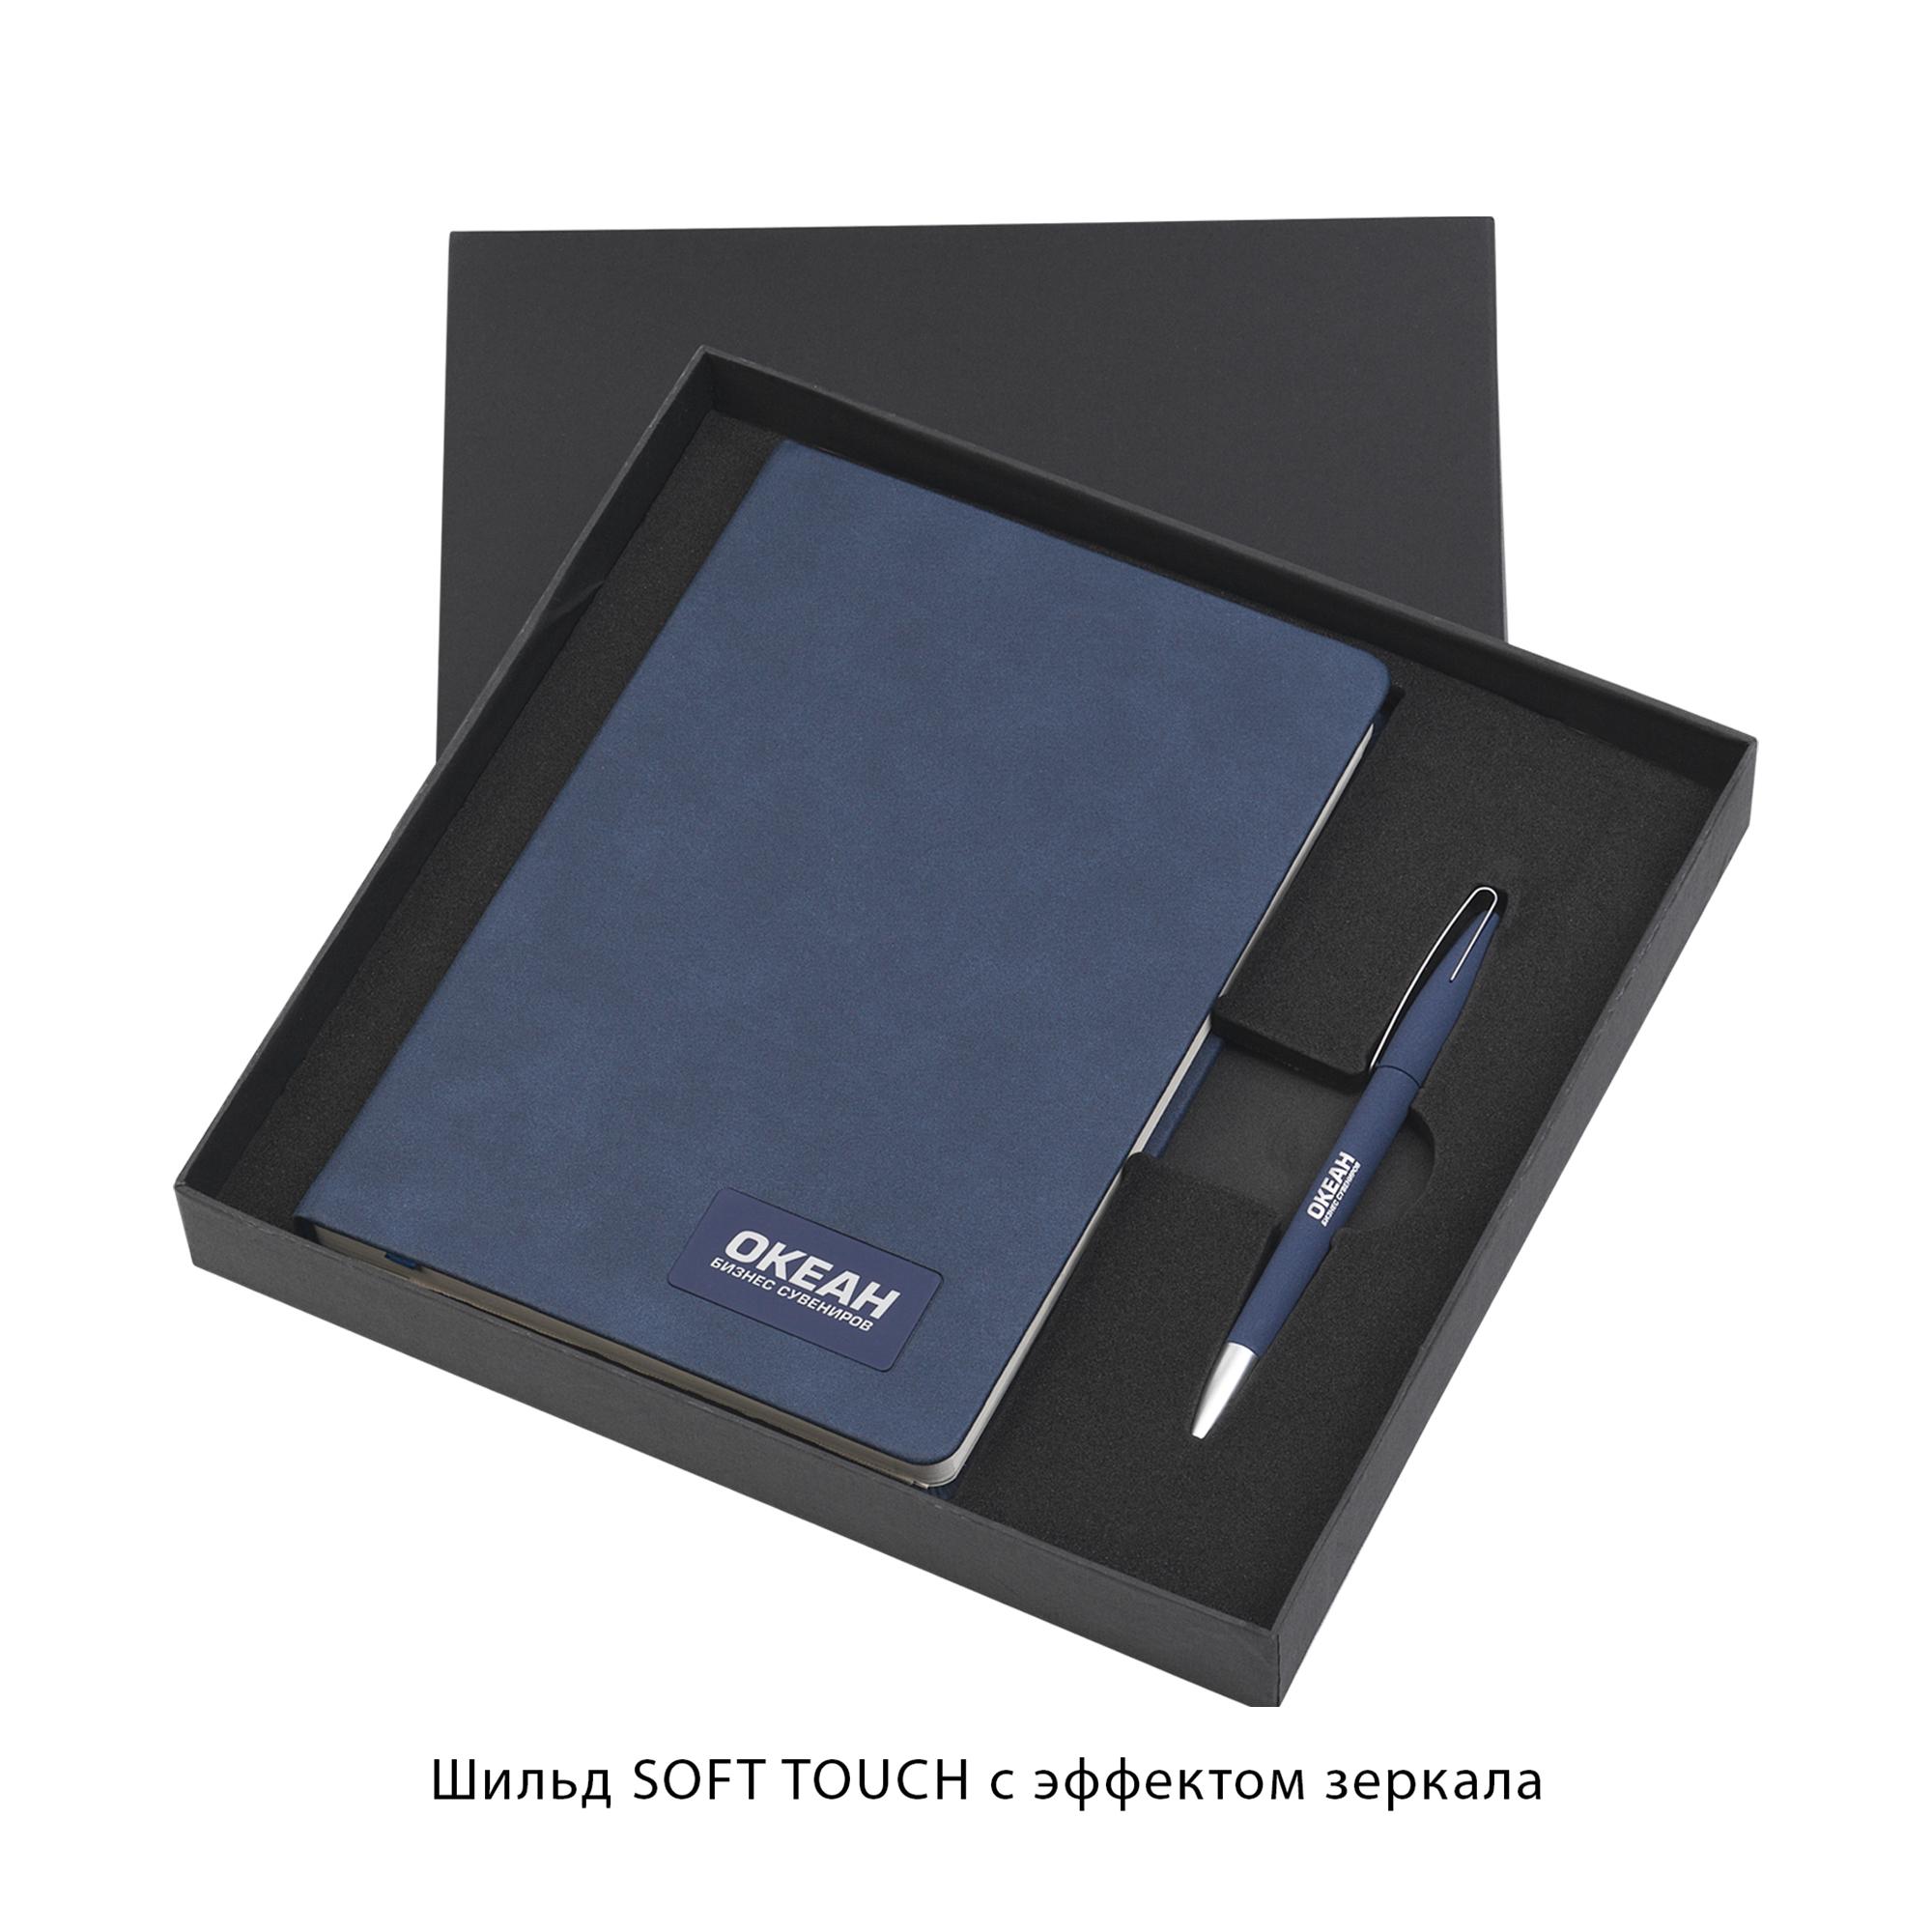 Подарочный набор "Латина", покрытие soft grip, цвет синий, фото 2